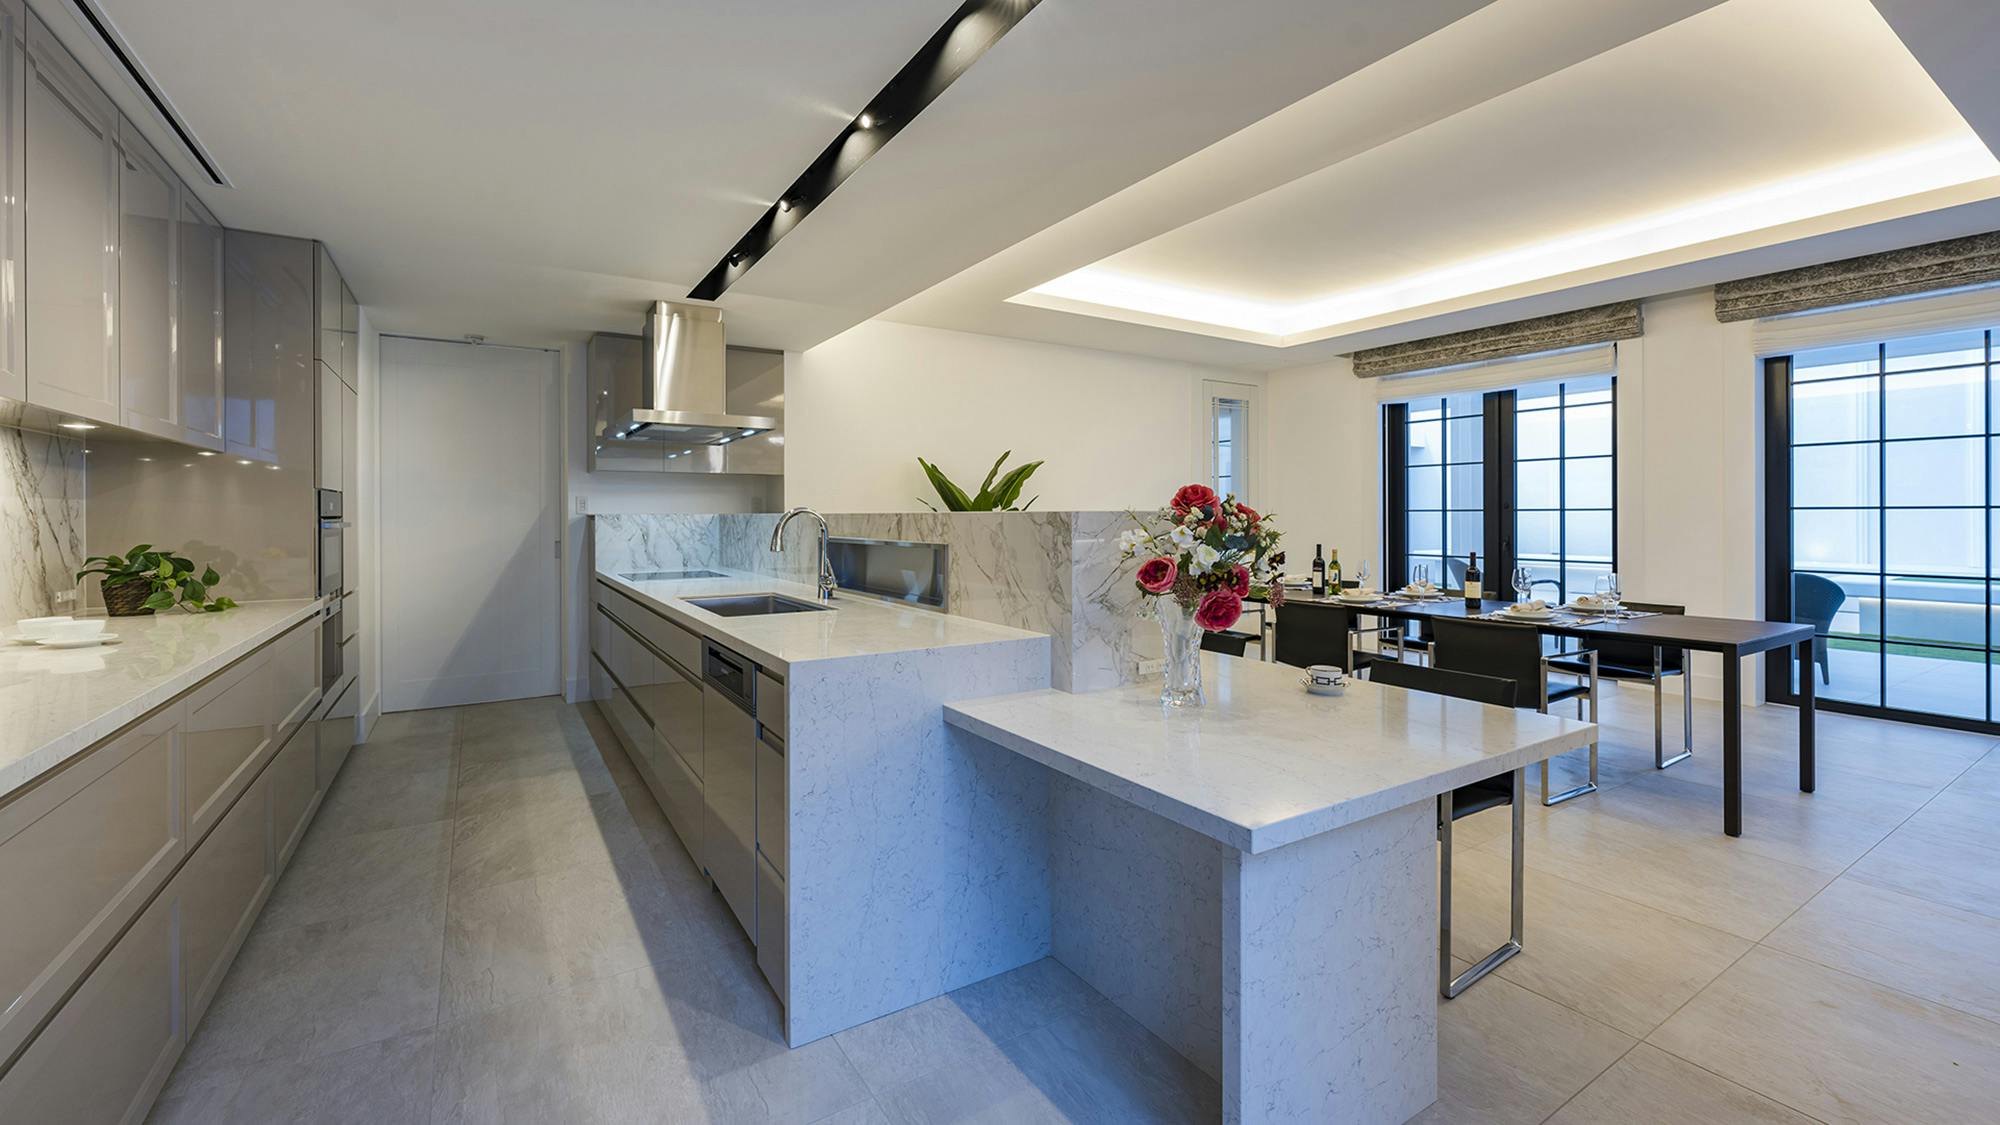 Bildnummer 32 des aktuellen Abschnitts von {{Dekton and Silestone enhance the kitchen and bathroom design in a Tokyo home}} von Cosentino Österreich